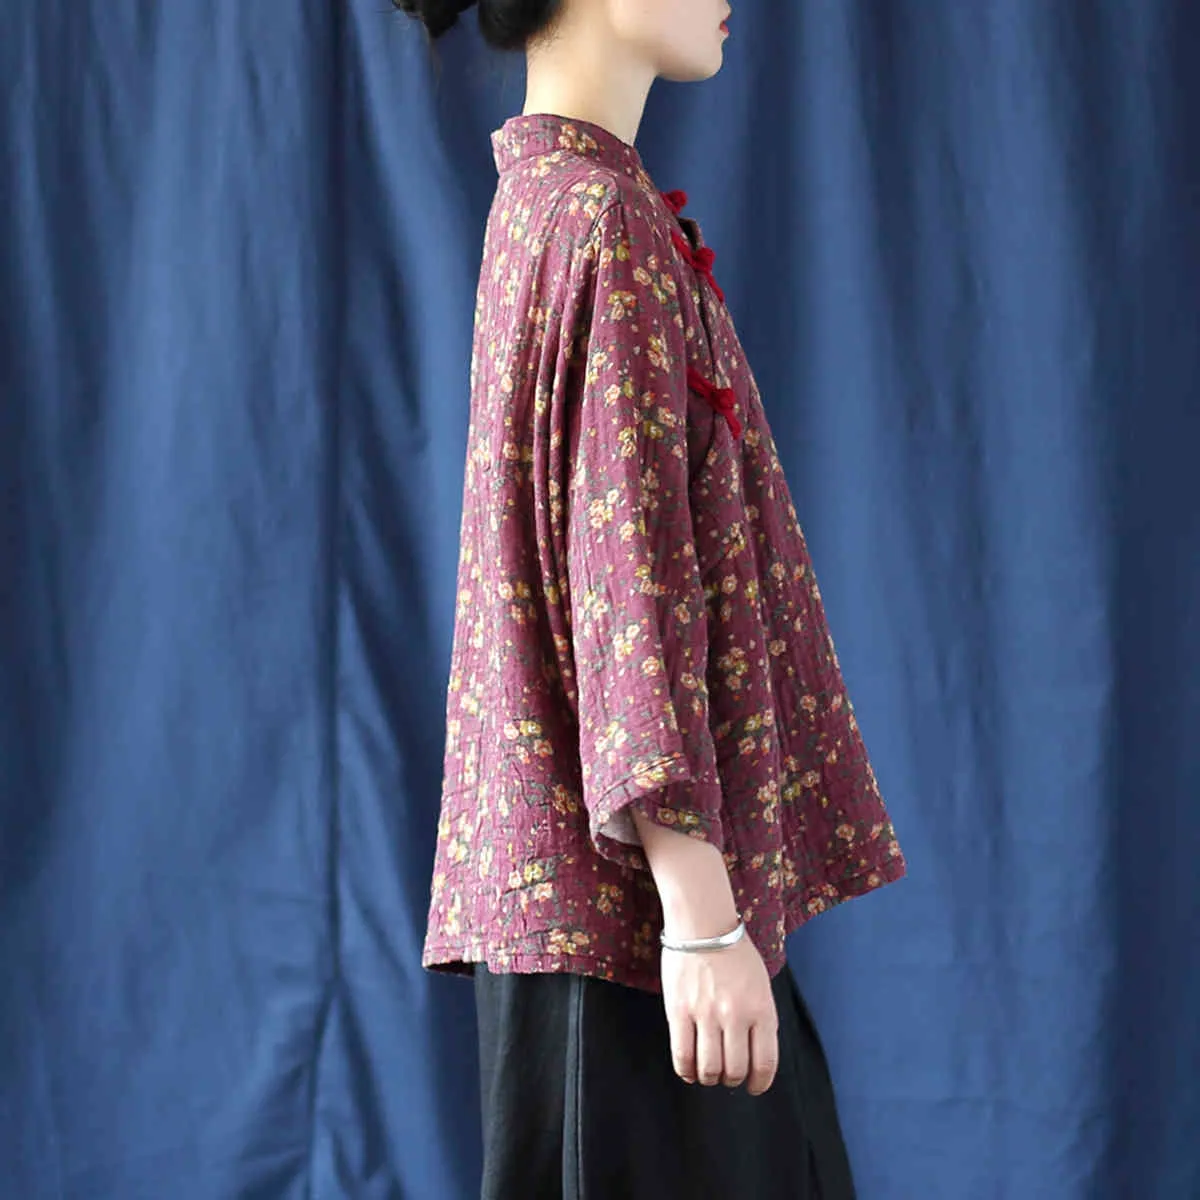 Johnature Herbst Vintage Shirts Für Frauen Stehen Sieben Hülse Blusen Taste Drucken Floral Tops Weibliche Chinesischen Stil Shirts 210521